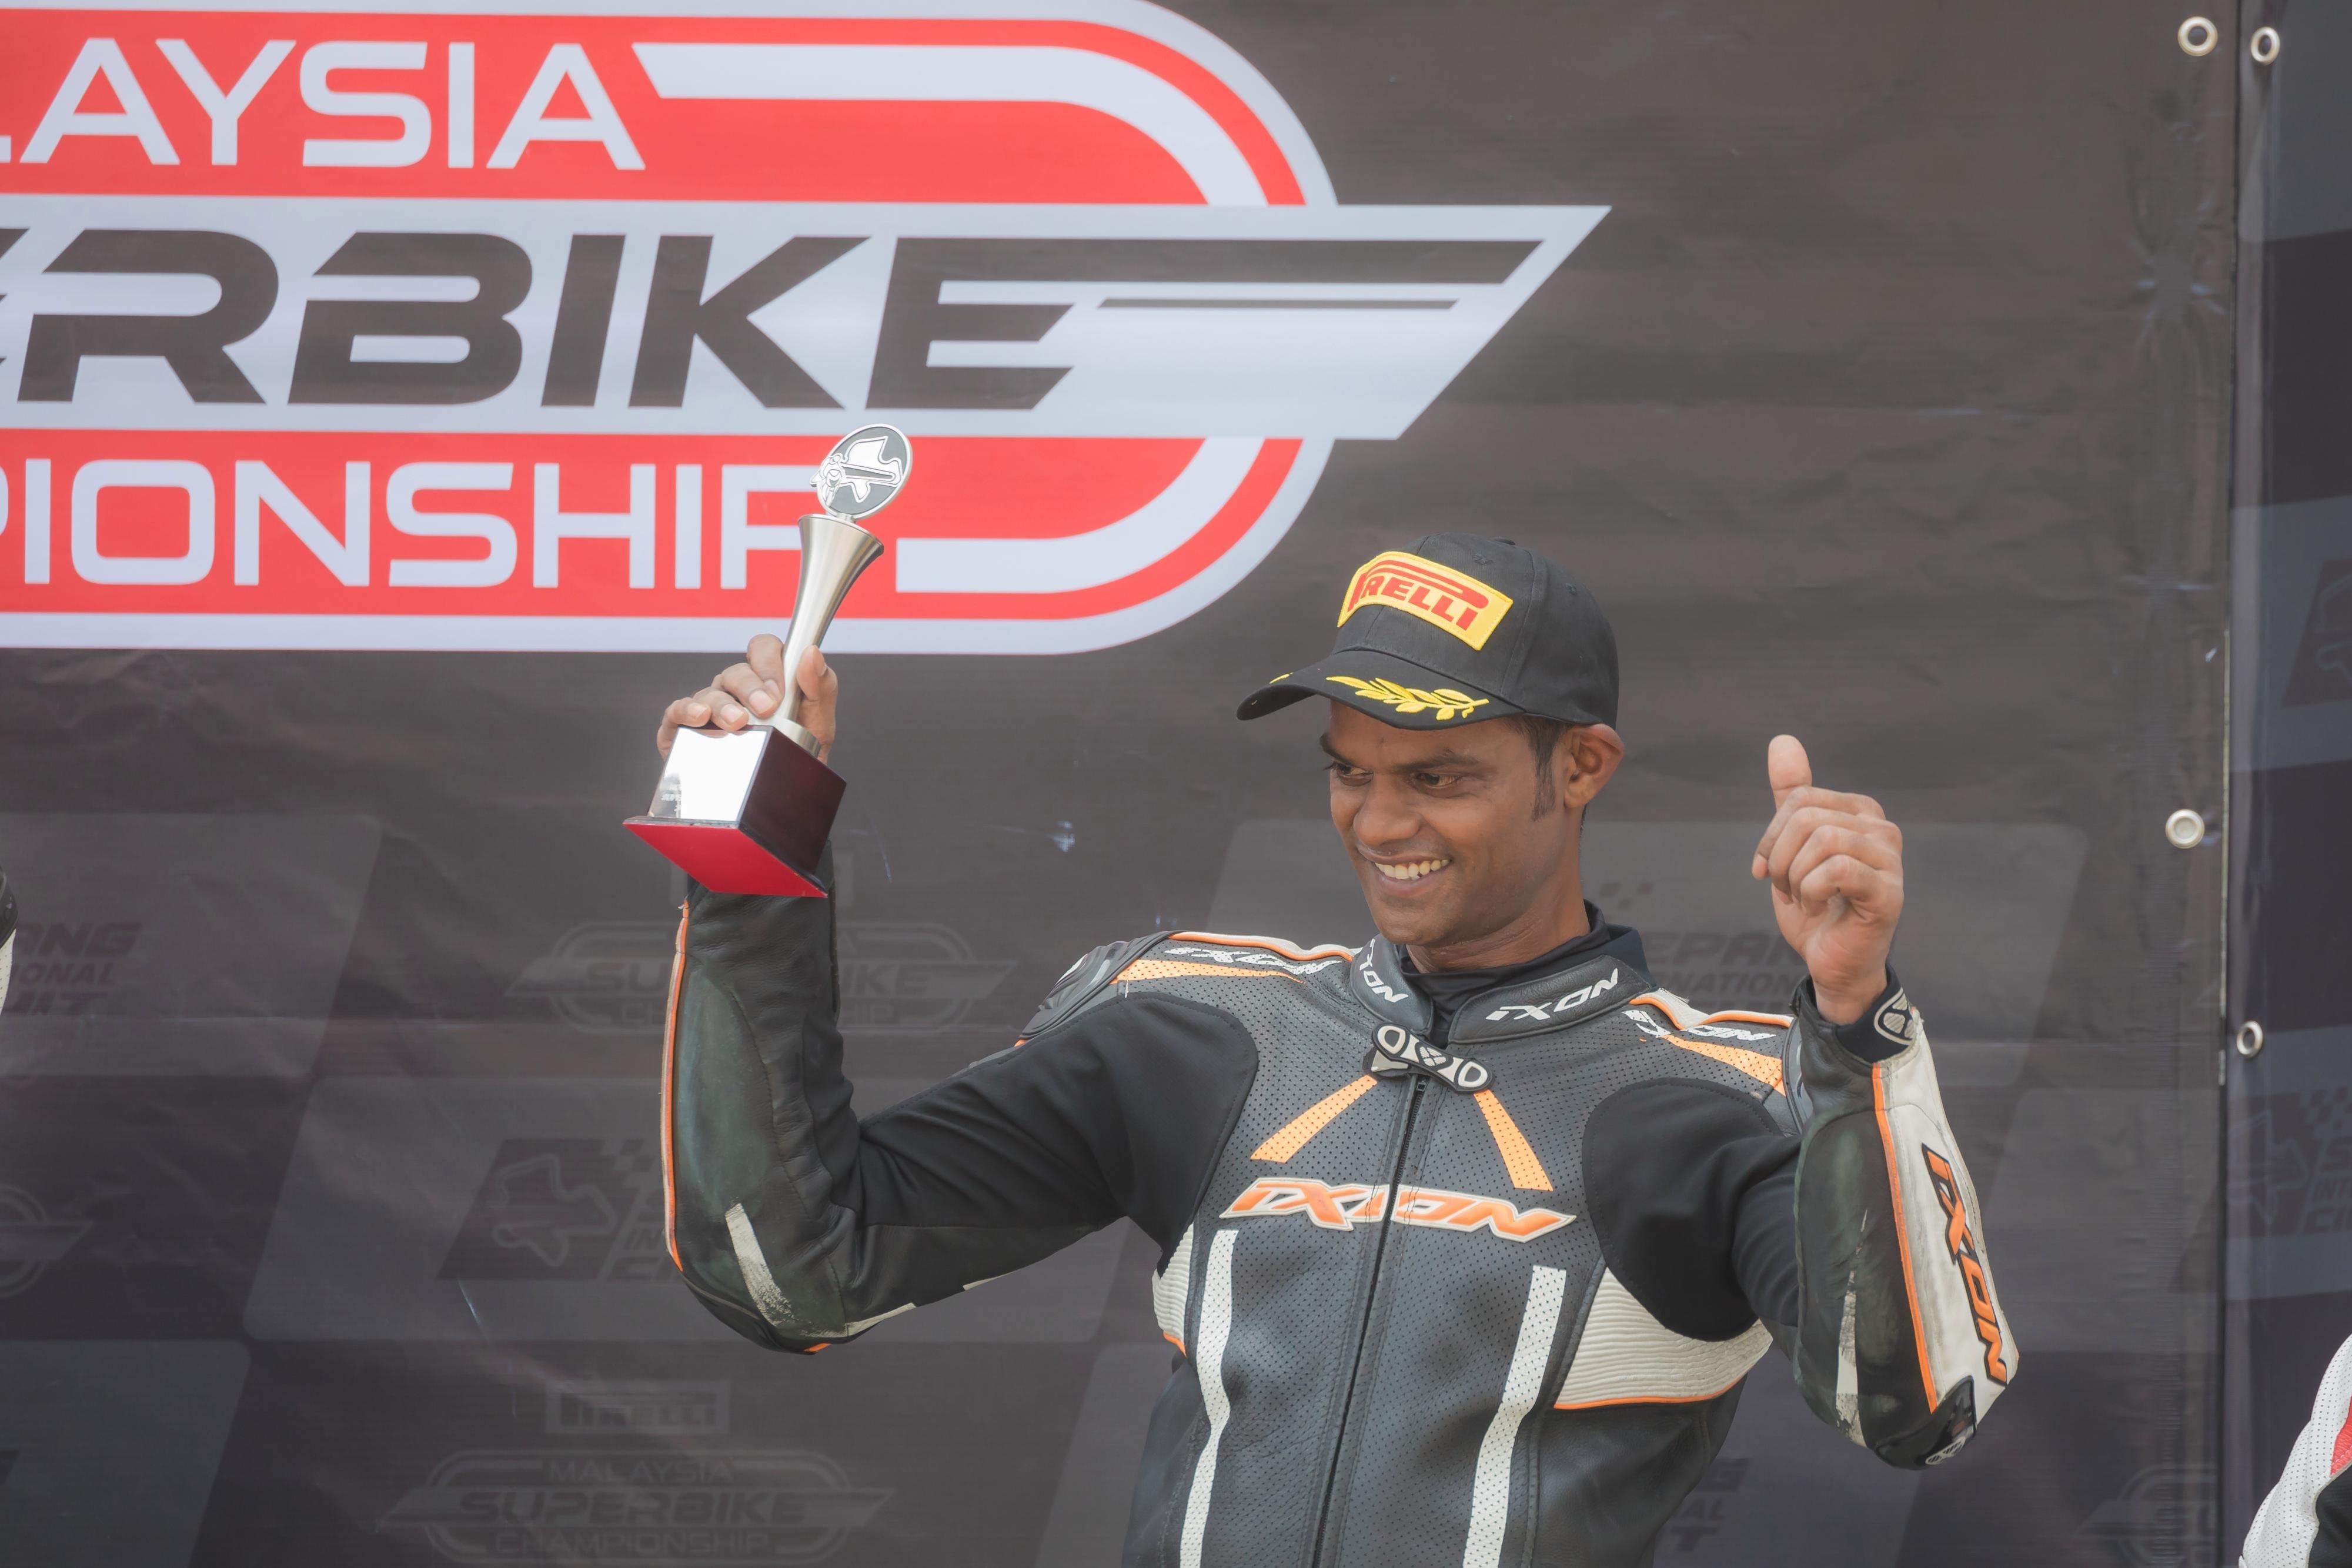 best of Association Malaysian amateur racing